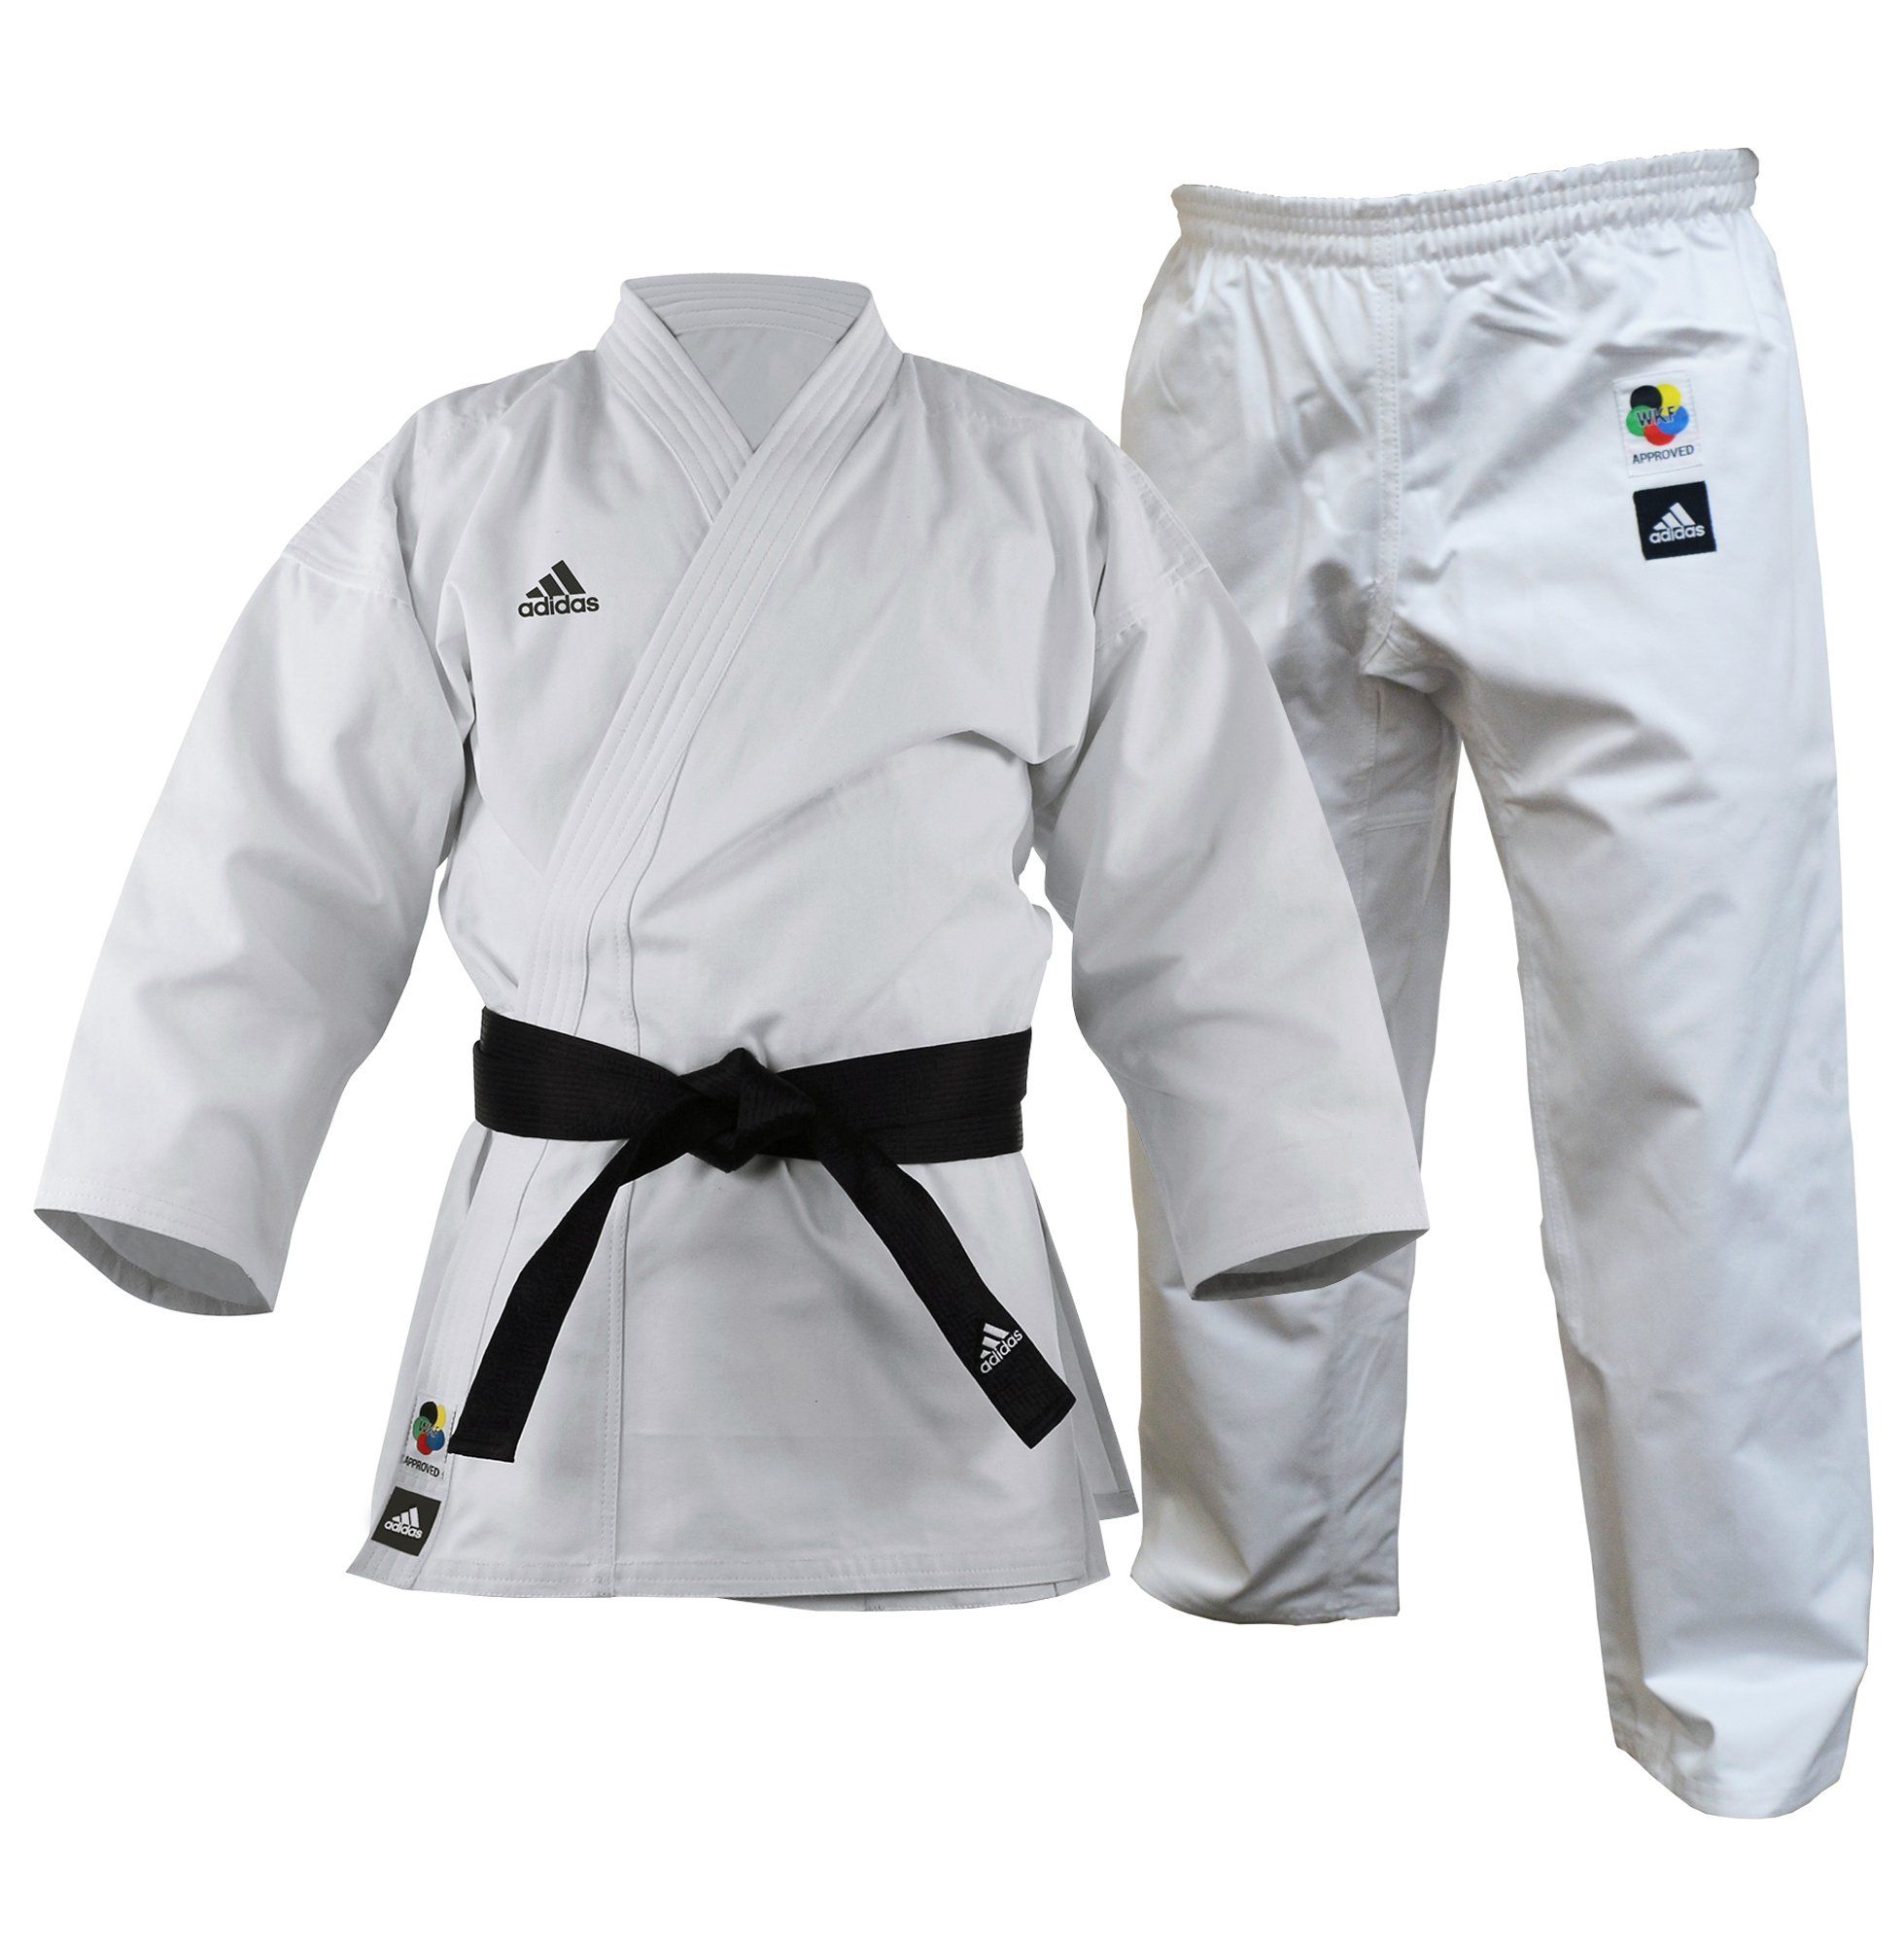 Training Karate Uniform Cut - 11oz